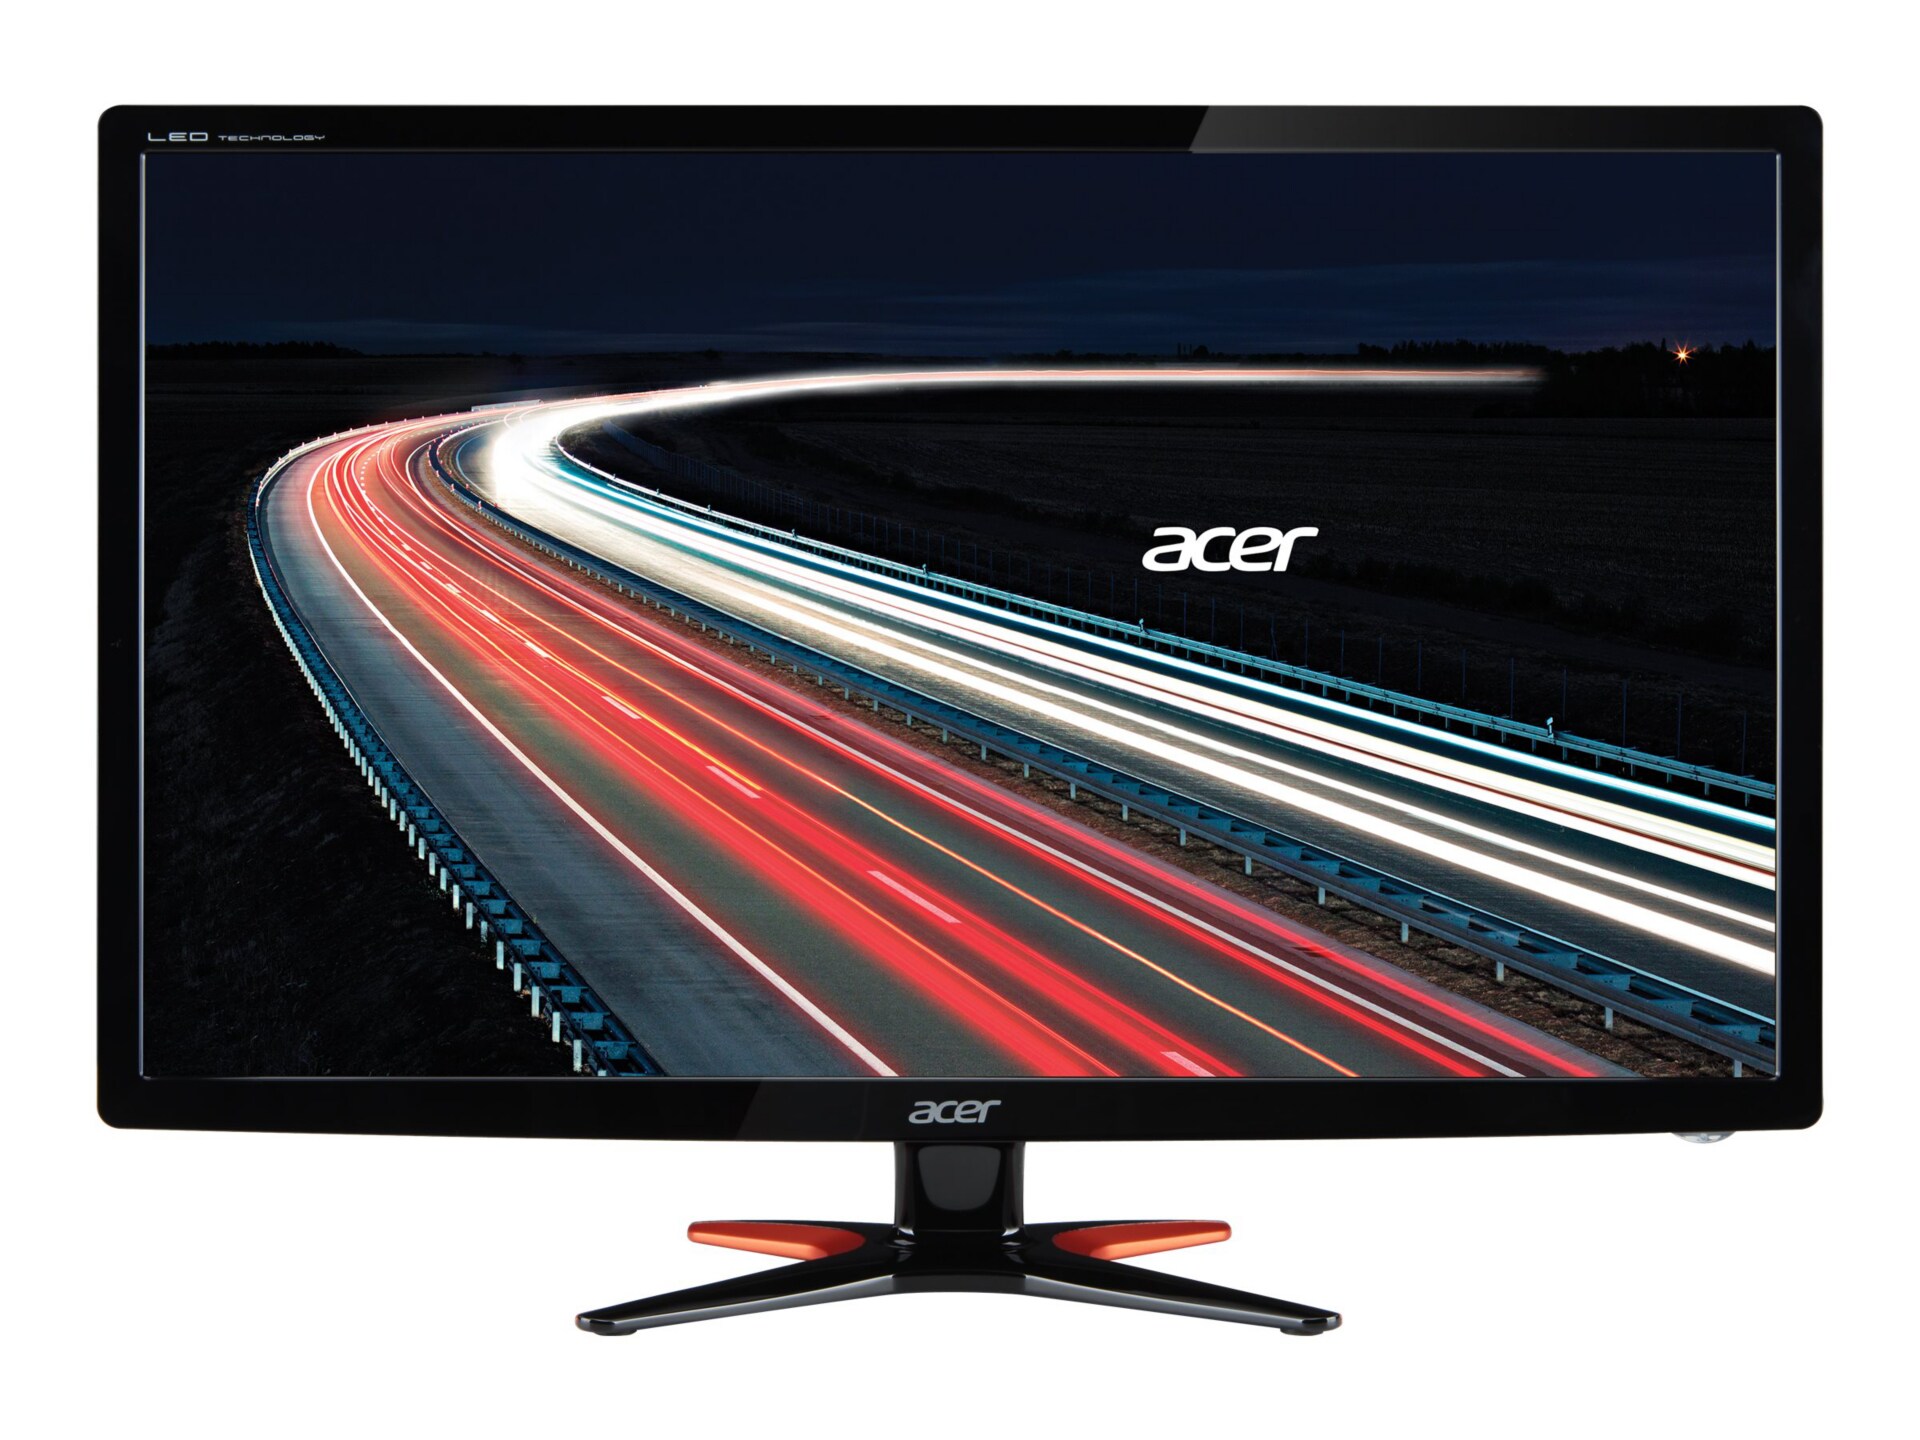 Acer GN246HL - 3D LED monitor - Full HD (1080p) - 24"